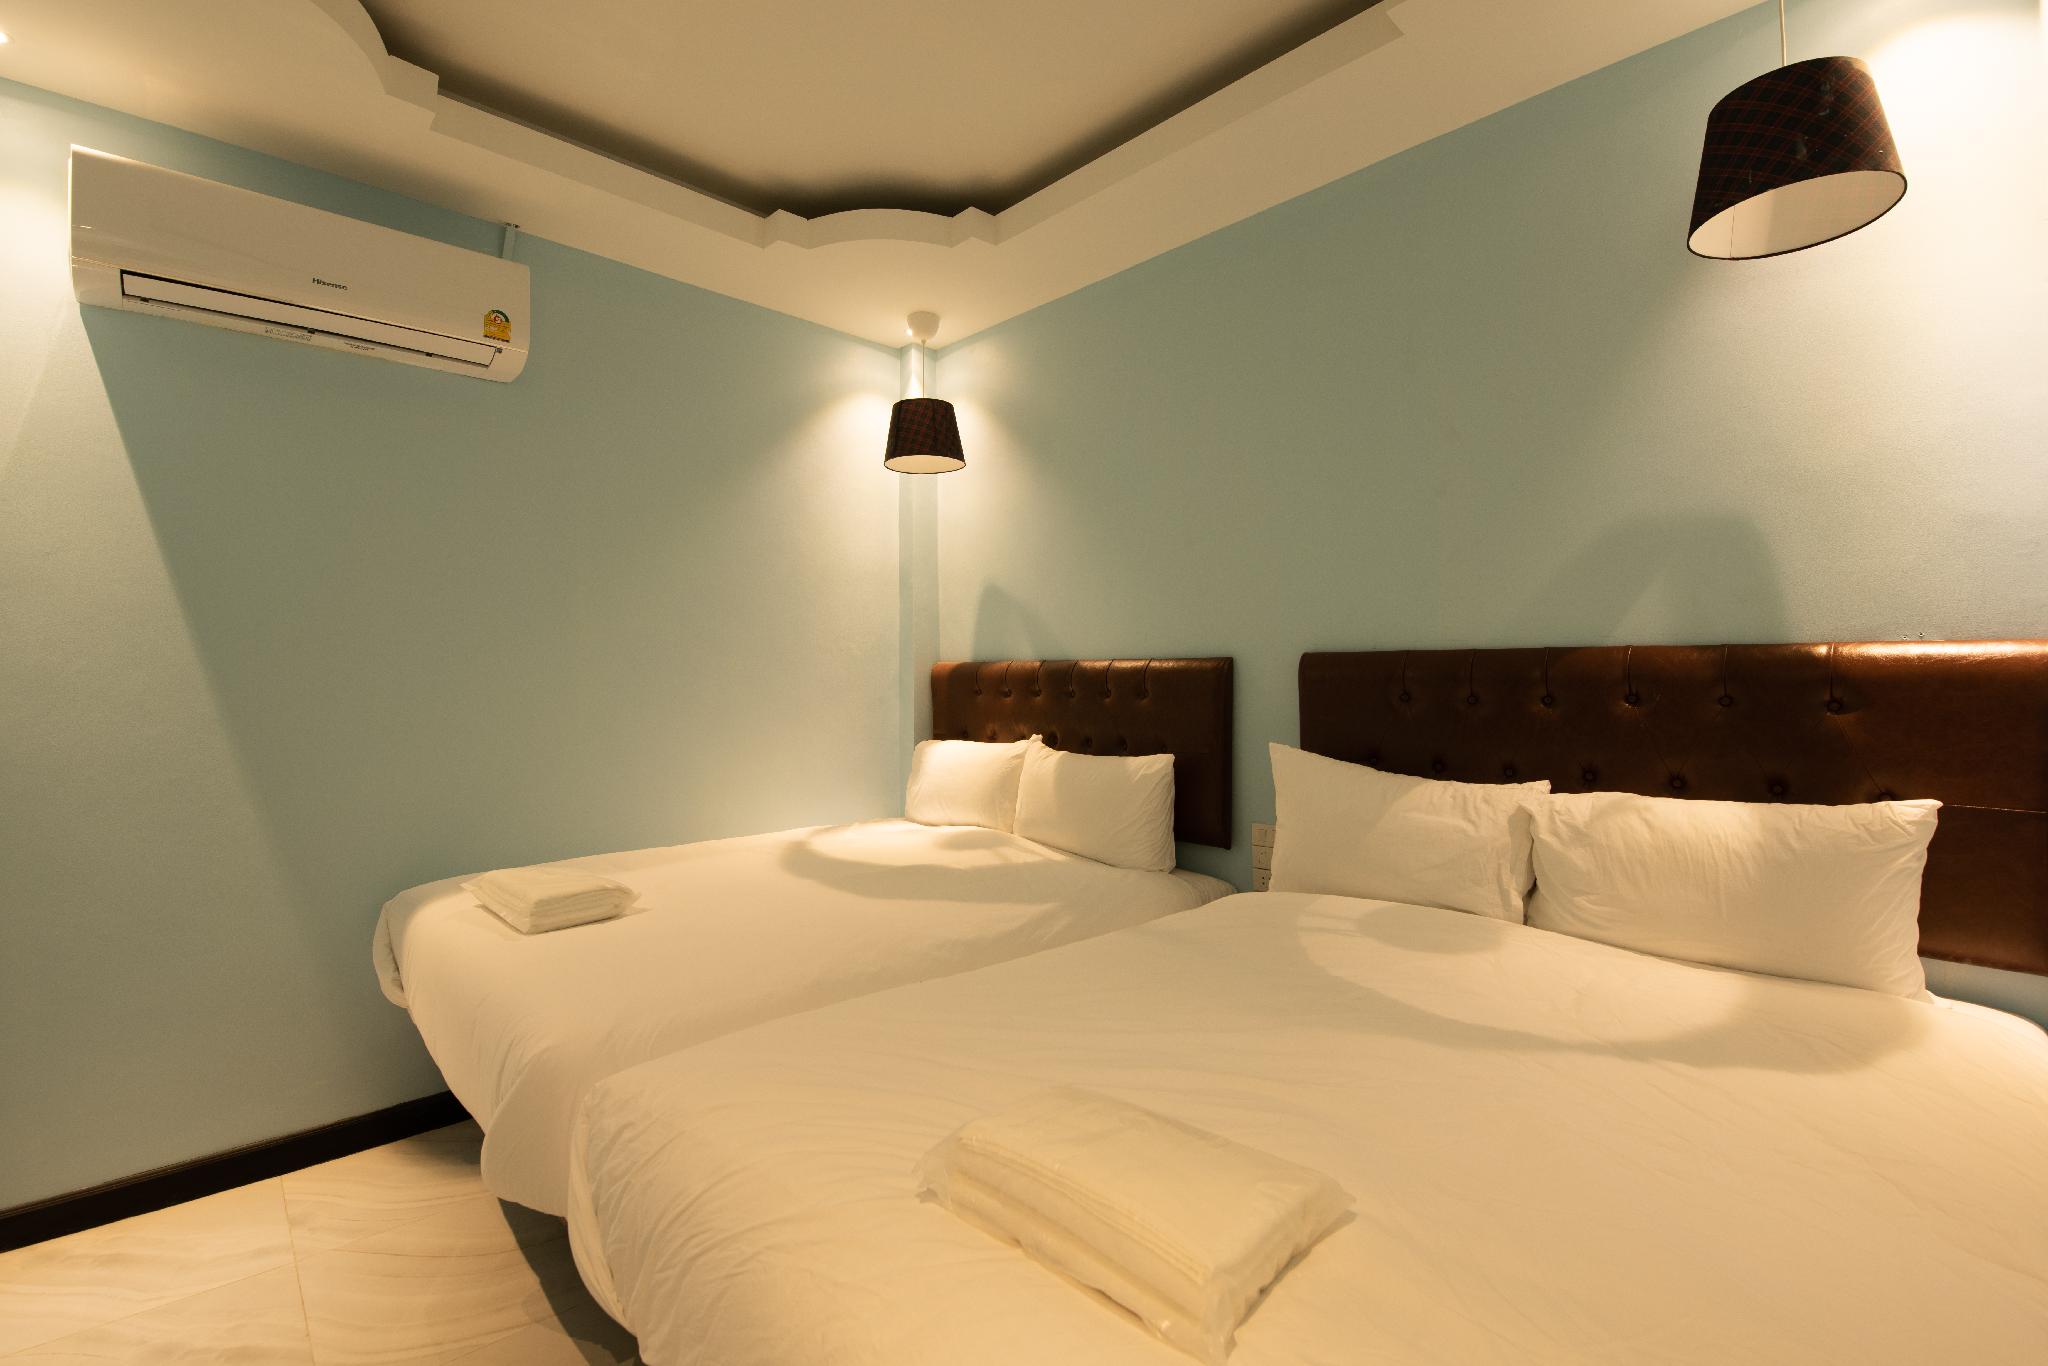 รีวิวFin Fin Hotel - โปรโมชั่นโรงแรม 3 ดาวในตำบล คลองสอง | Trip.com